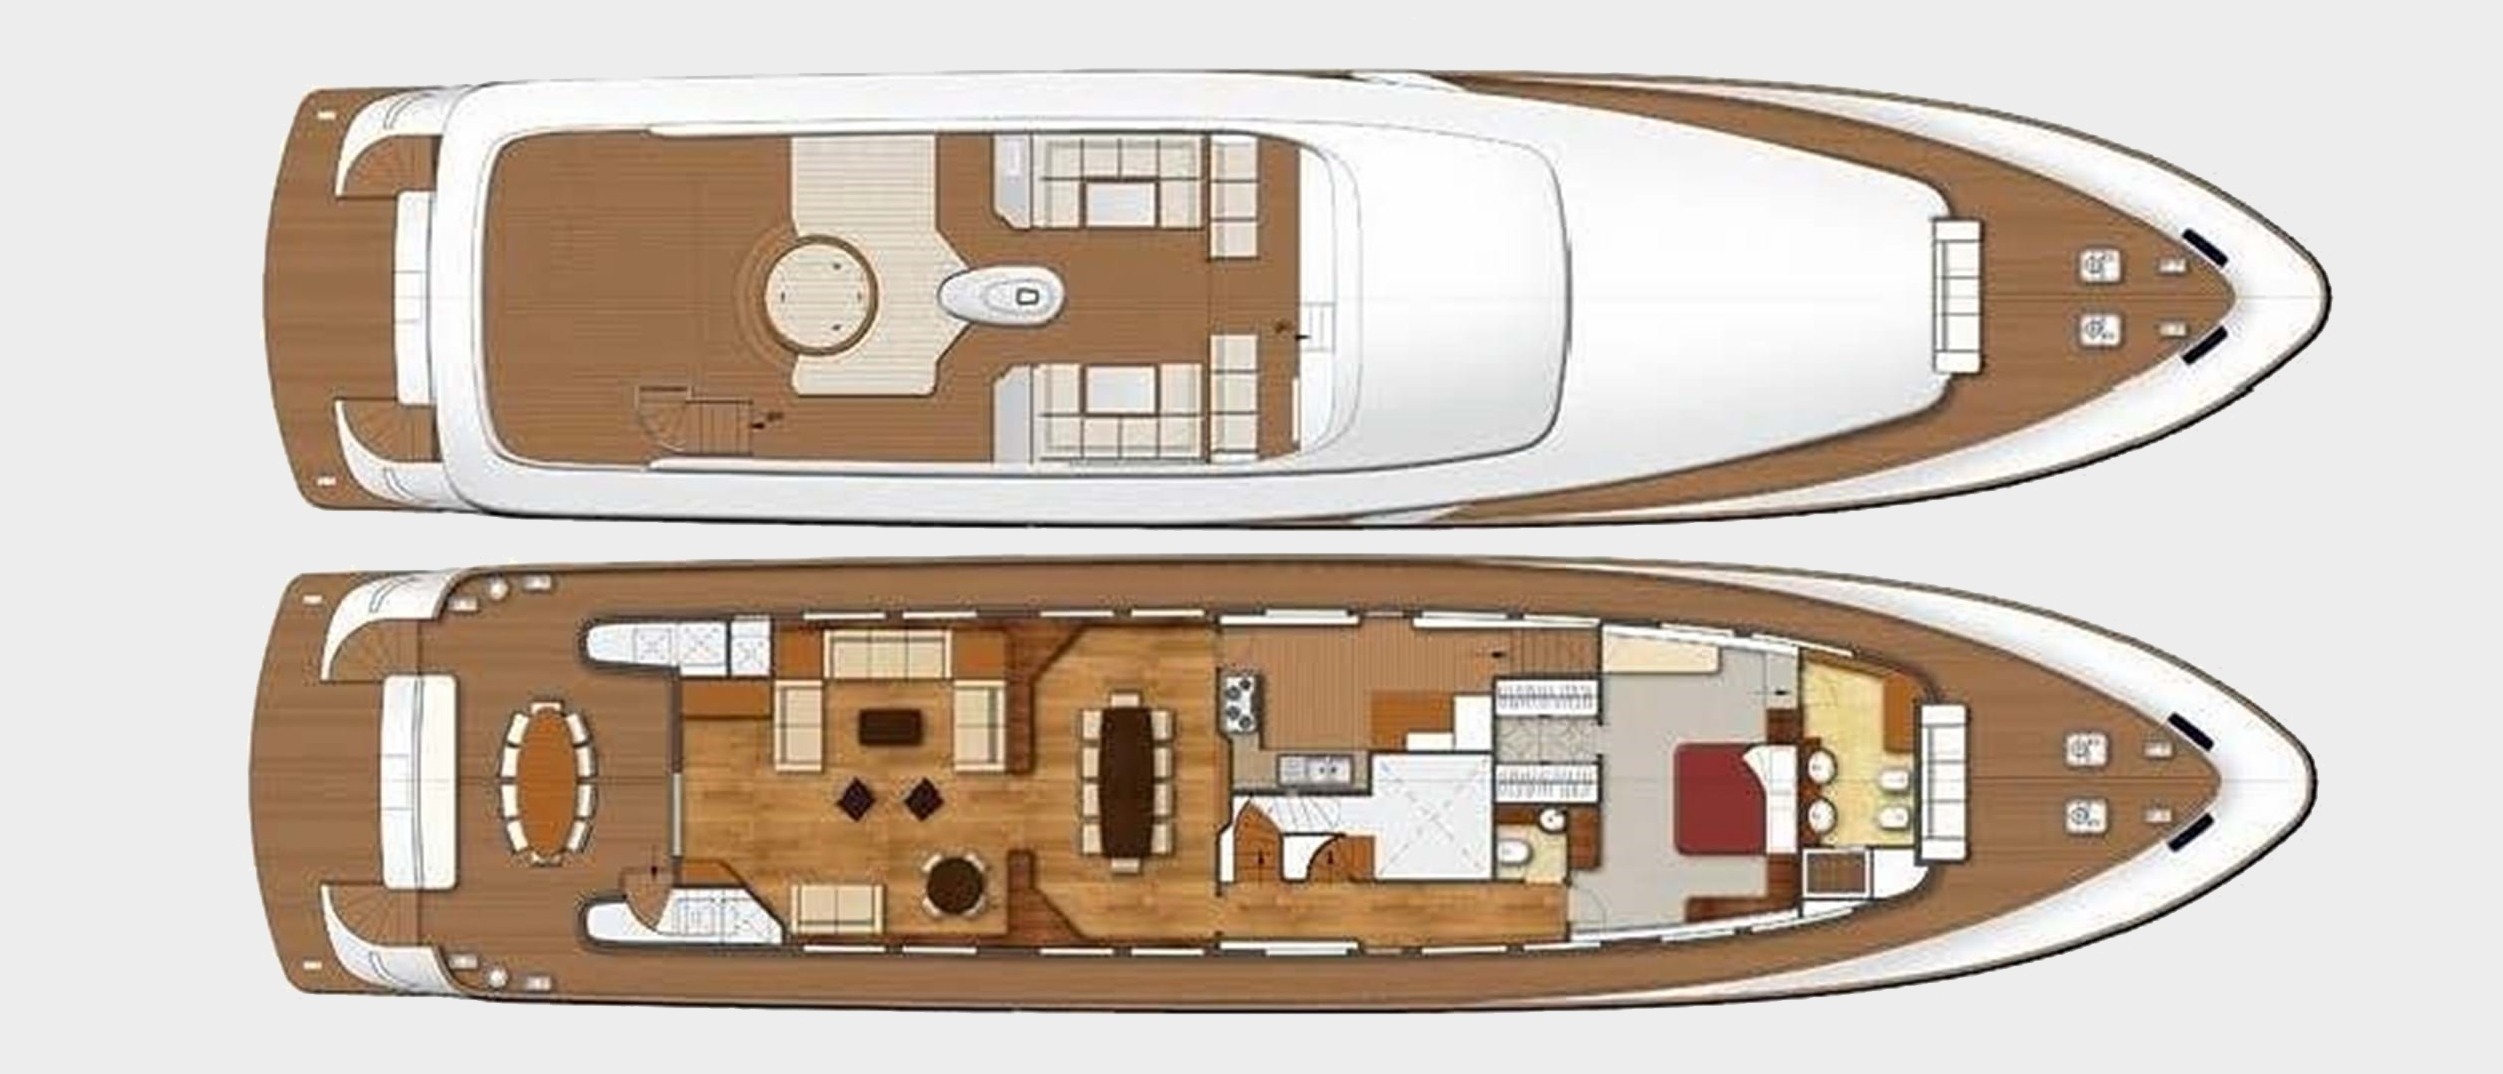 seventh sense yacht charter layout